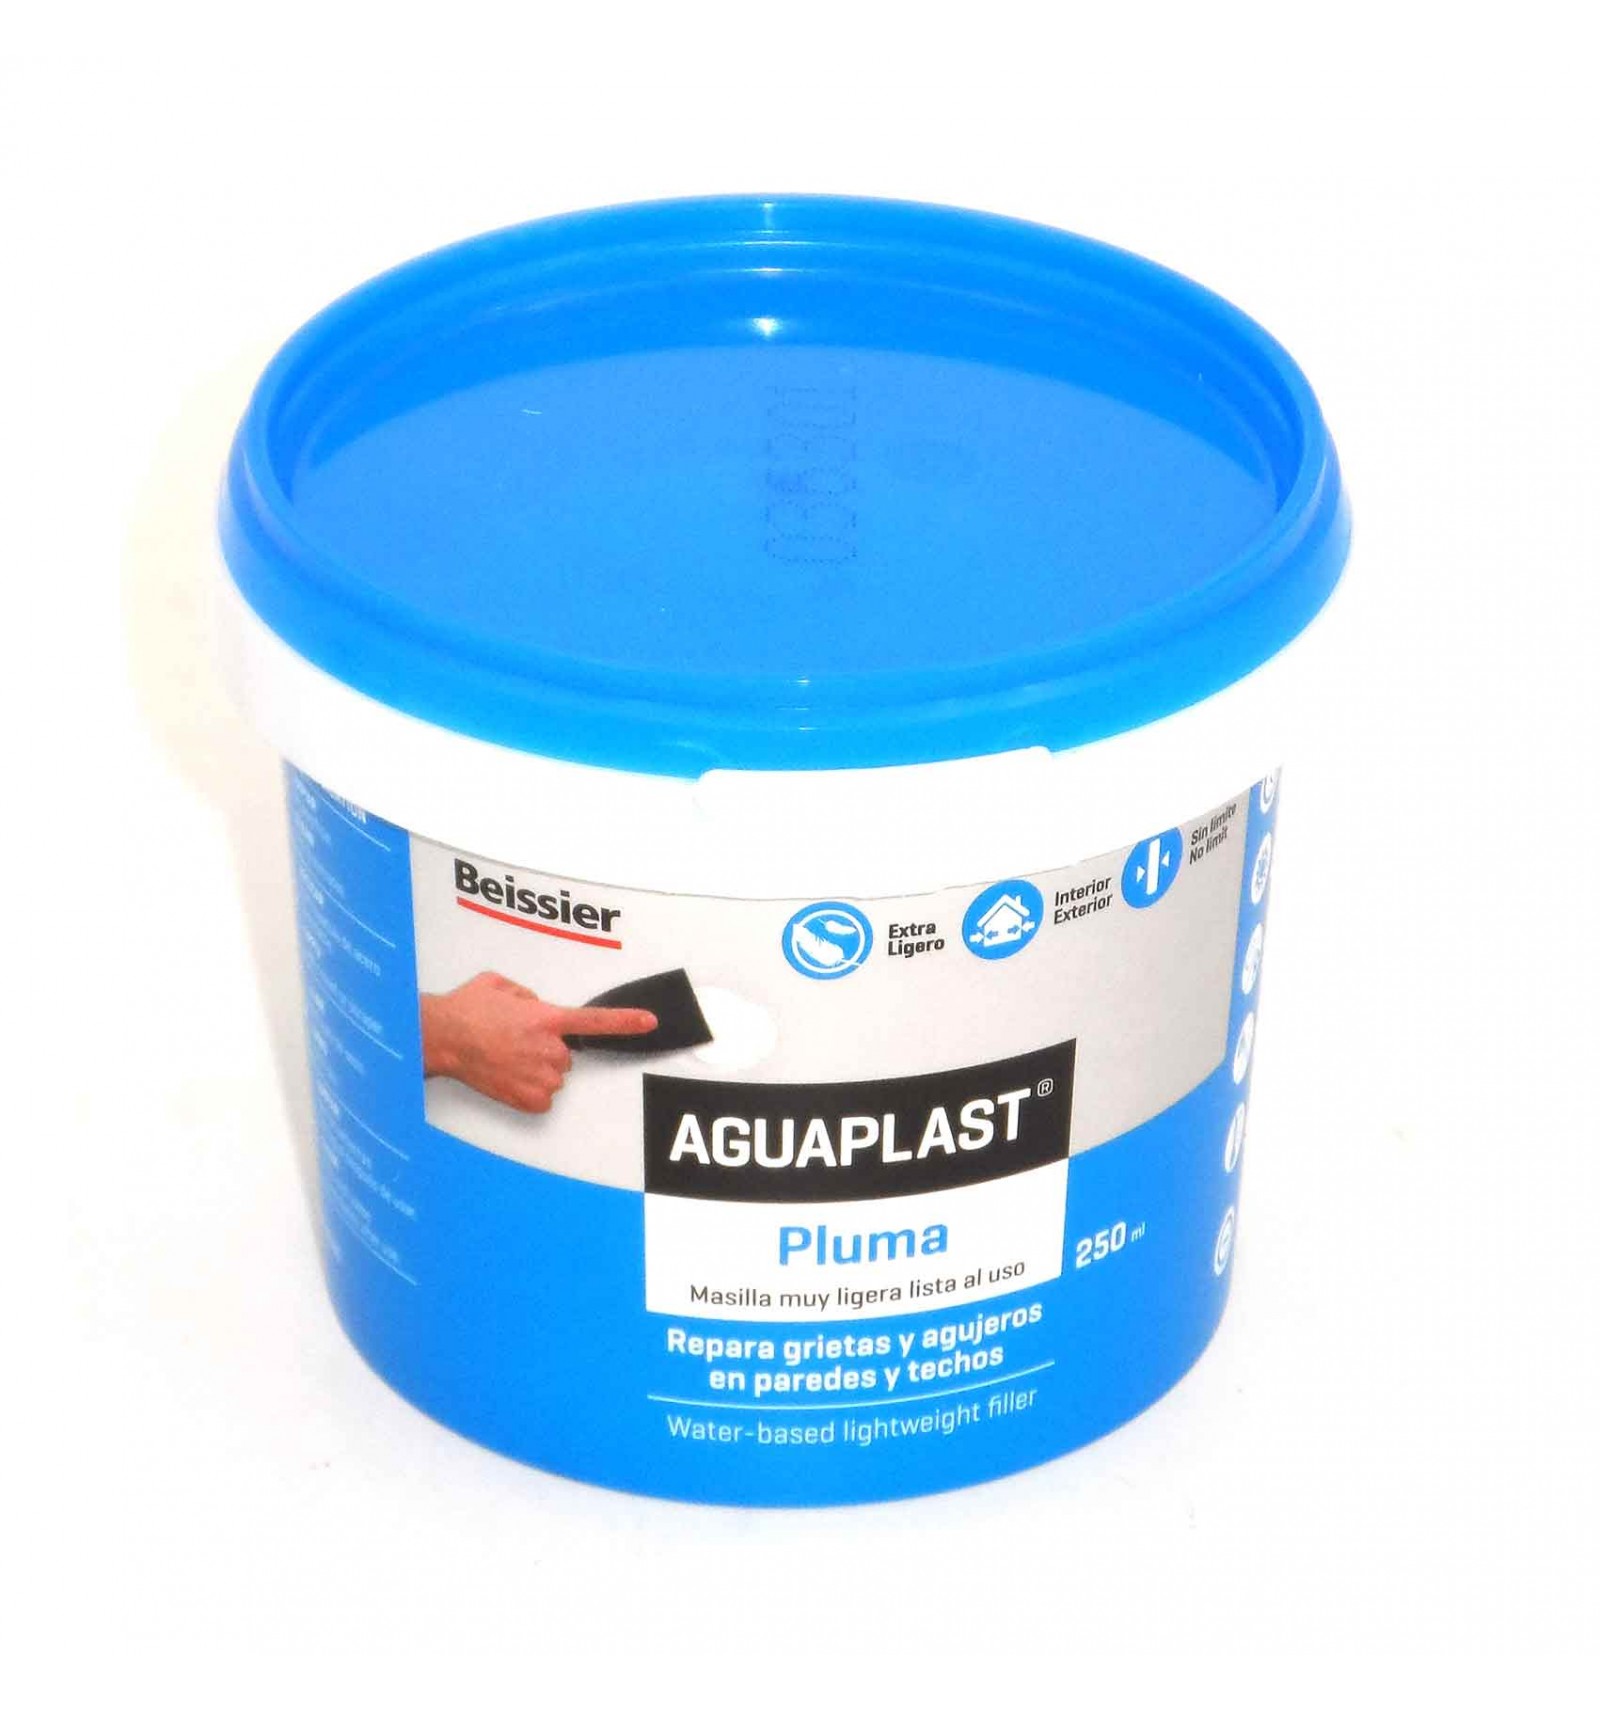 Masilla ligera lista al uso Aguaplast Pluma (tarro 250ml) - Beissier